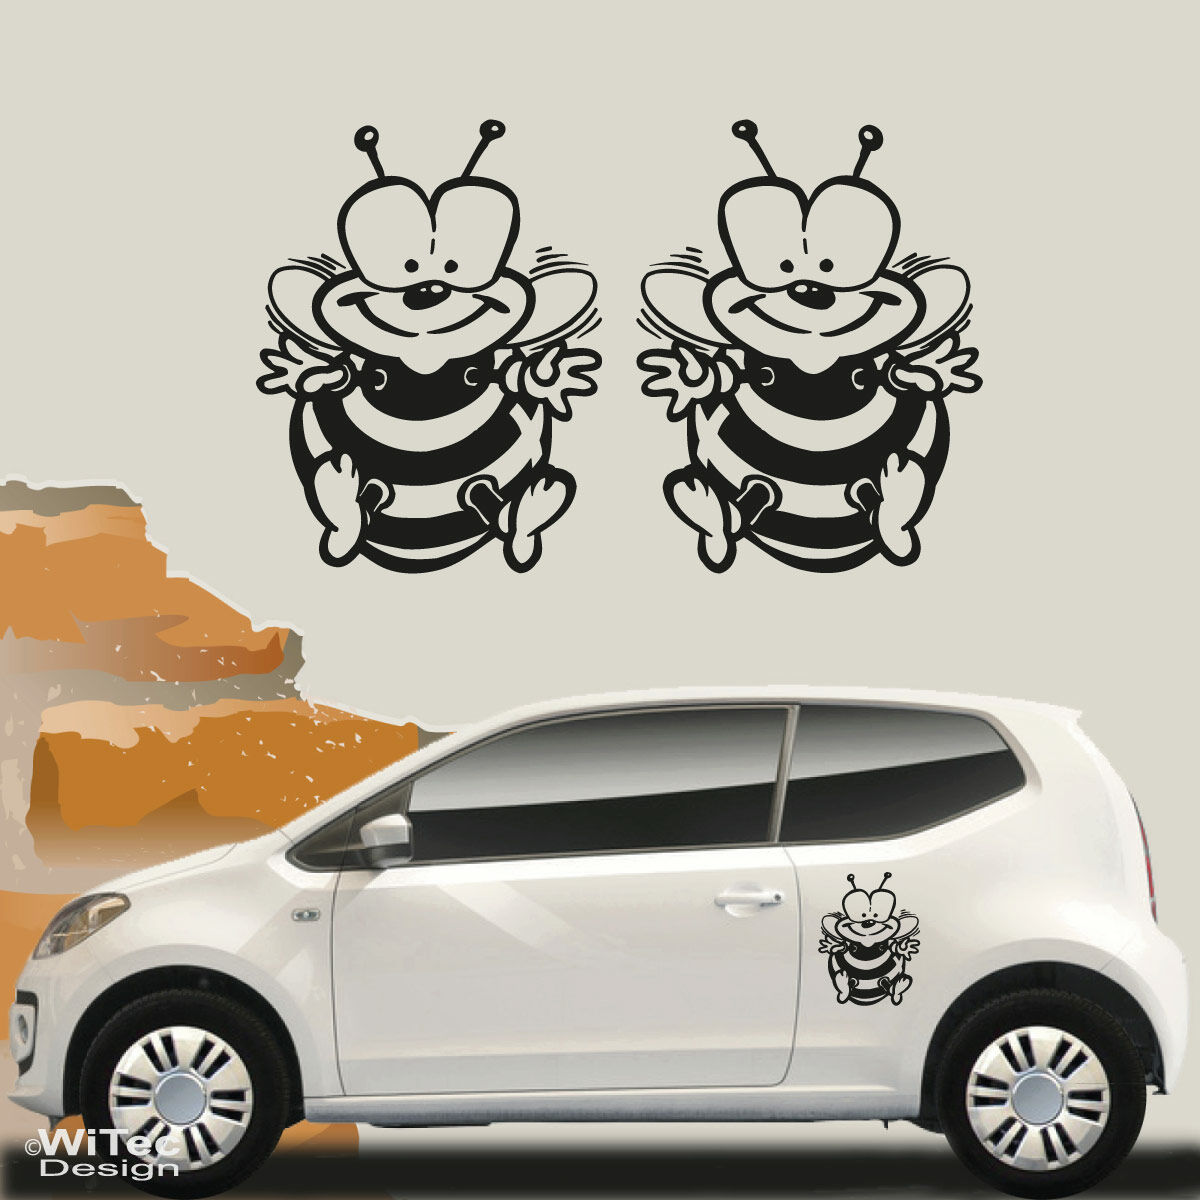 Süße Biene an Bord!!! Autoaufkleber Sticker Aufkleber Auto